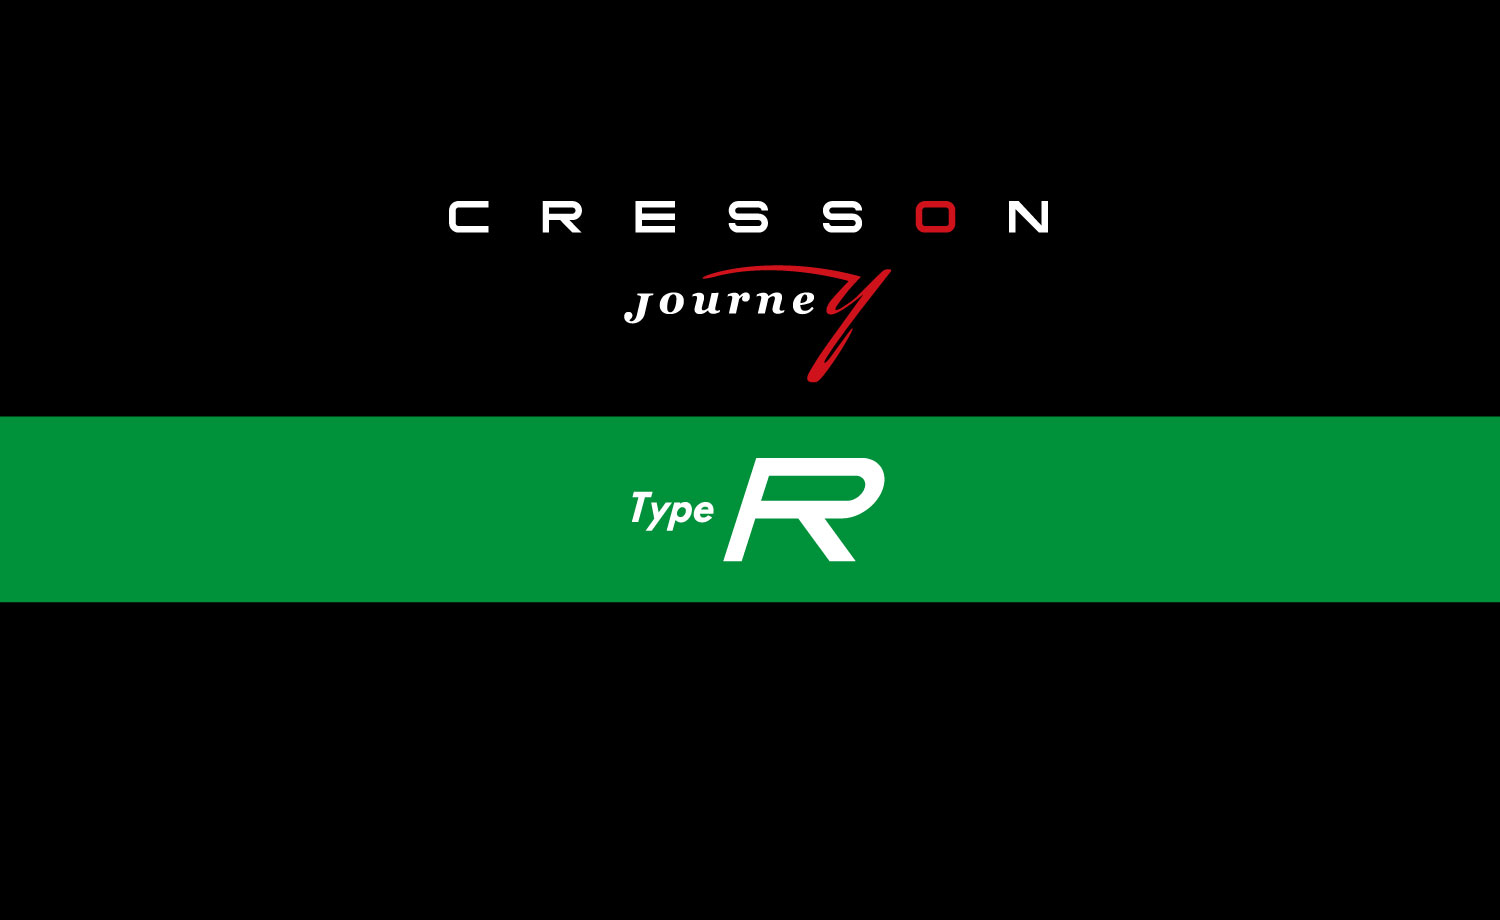 キャブコンキャンピングカークレソンジャーニー Type Rのスマホ用カバー写真